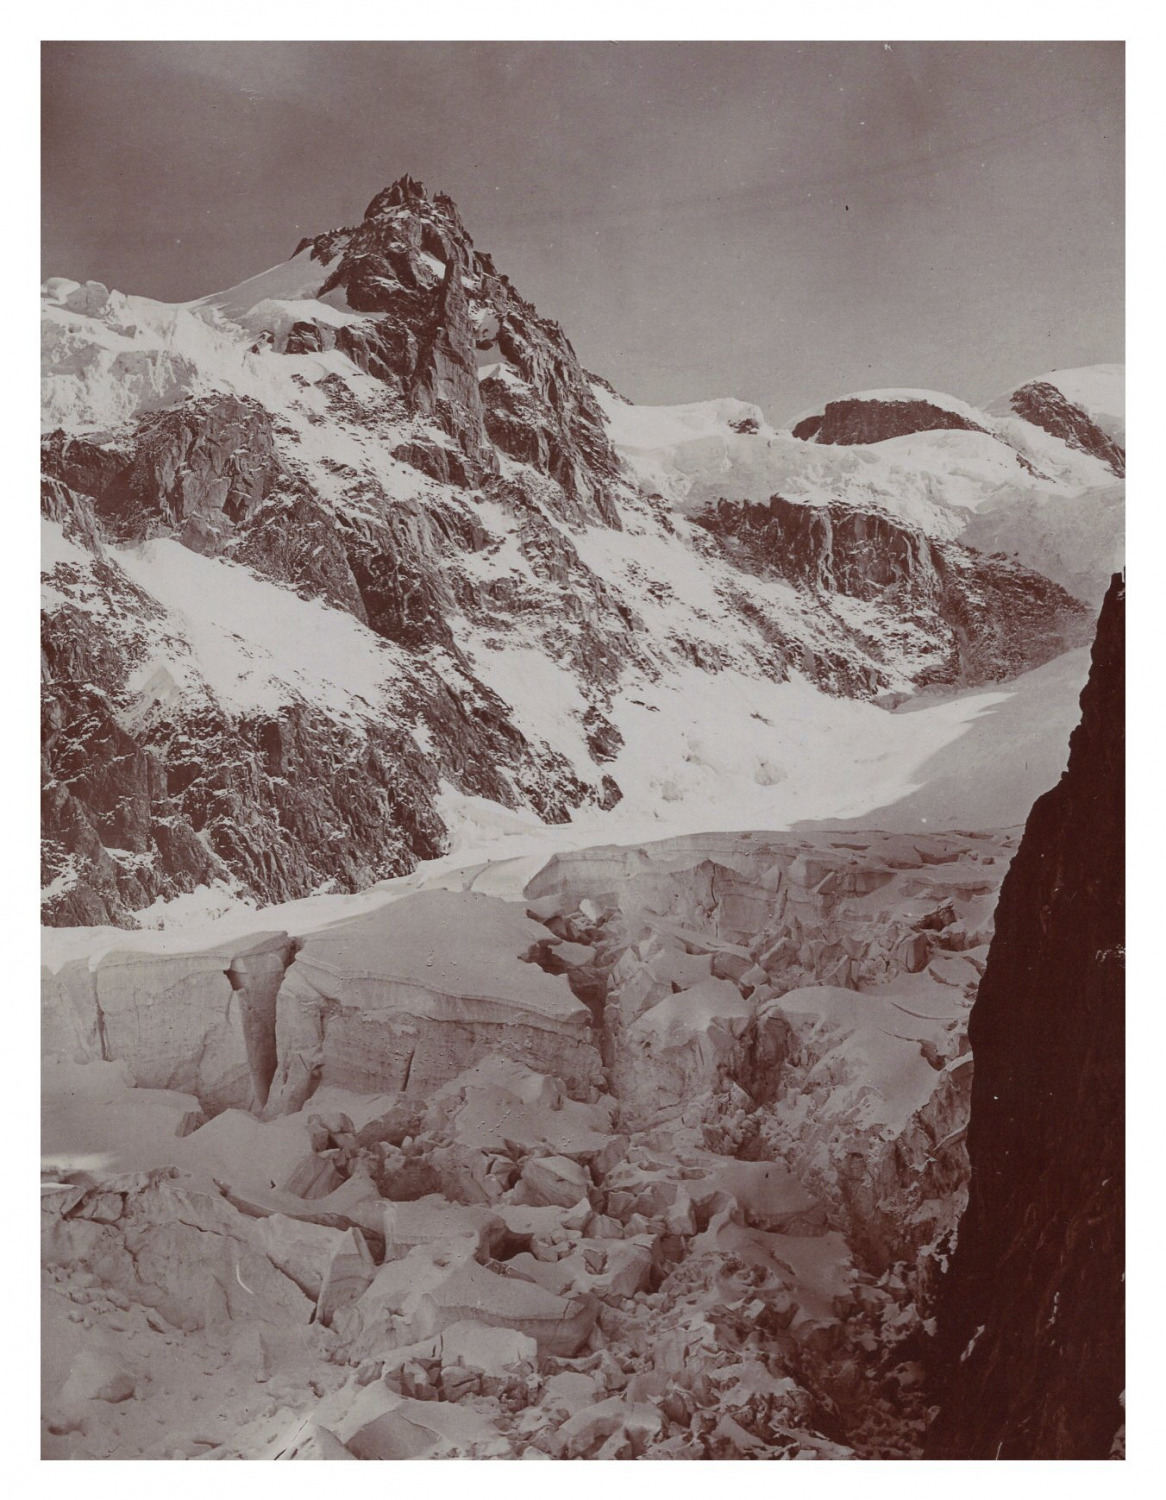 France, Grands Mulets, Aiguille du Midi, Vintage Print, circa 1900 vintage print